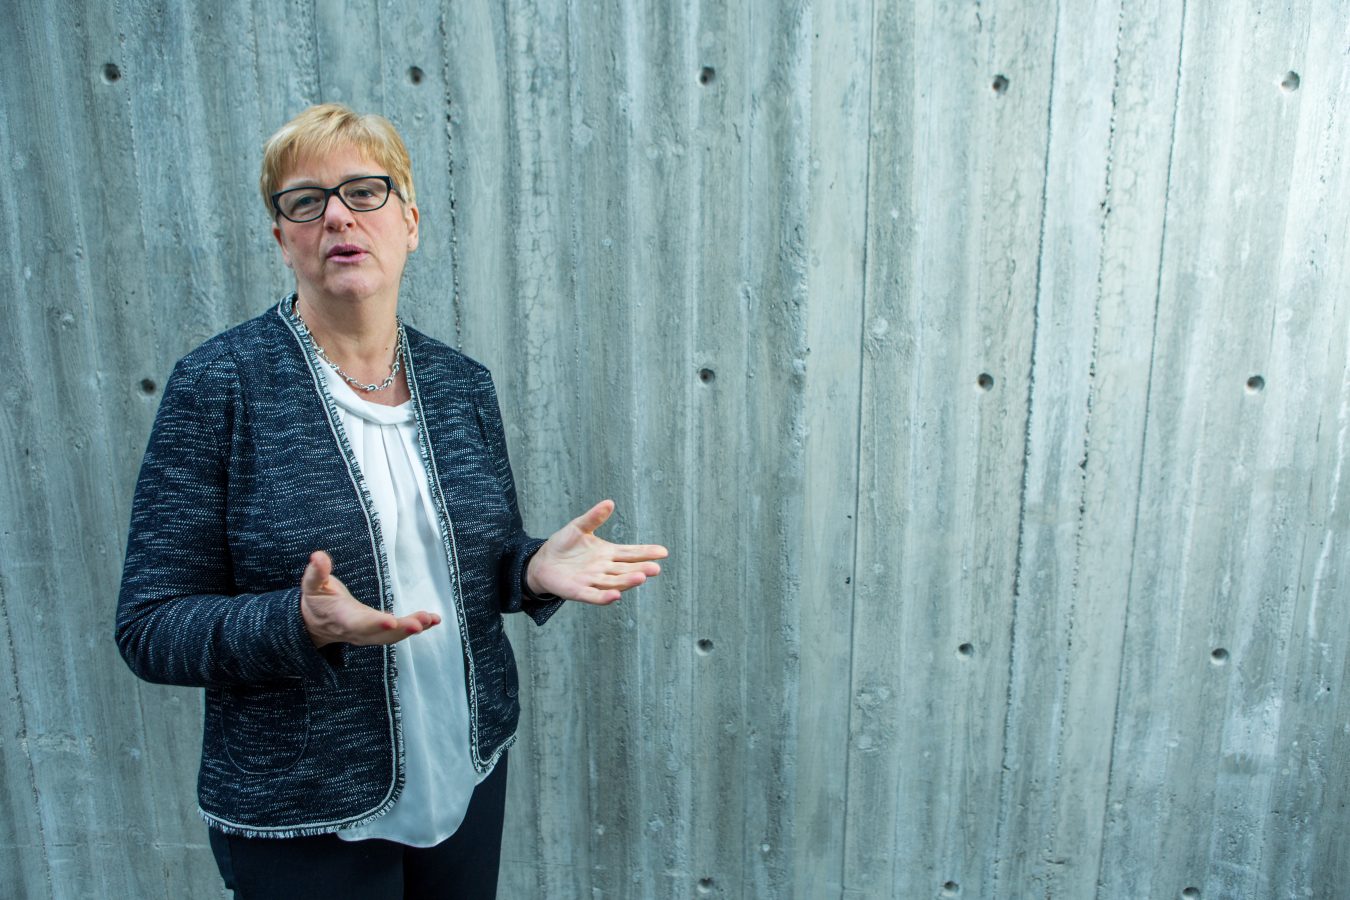 YS-leder Jorunn Berland står foran en grå vegg. Hun snakker, og gestikulerer med åpne hender.